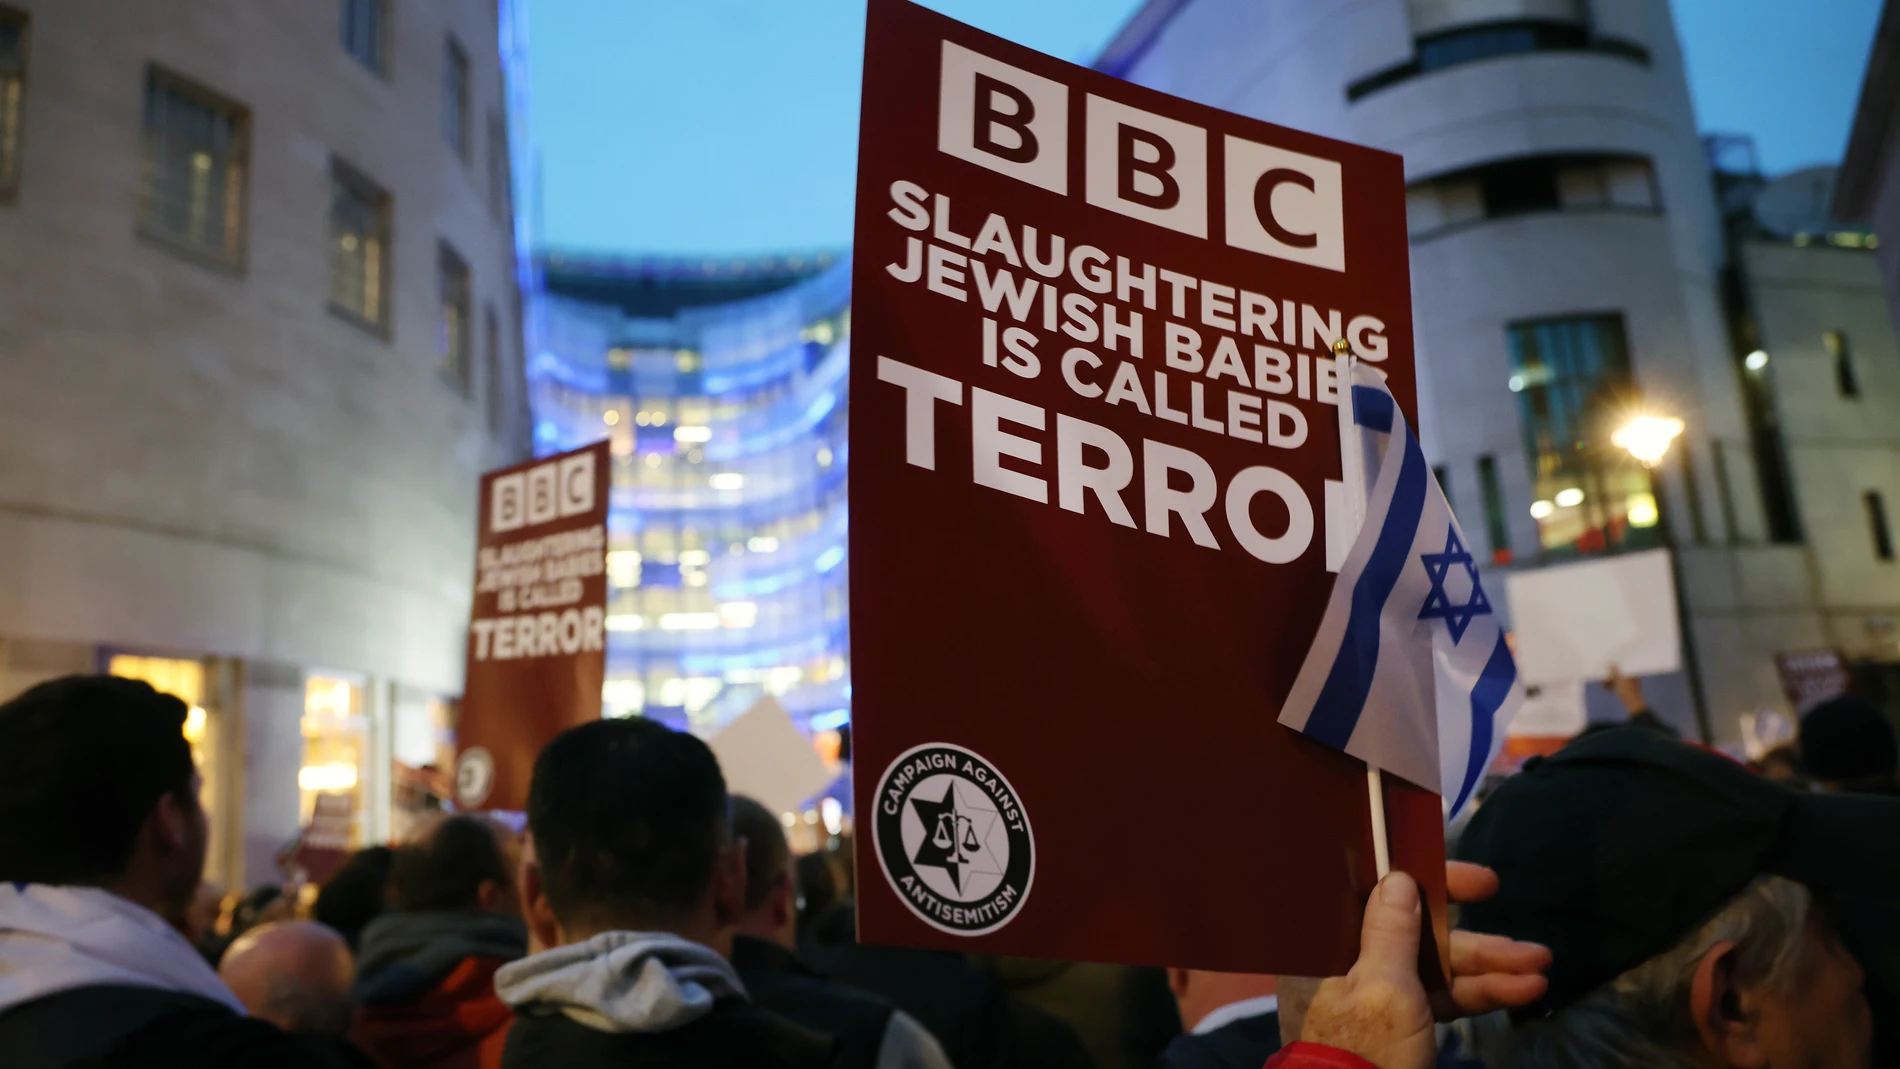 Manifestantes protestan contra la sede de la BBC en Londres